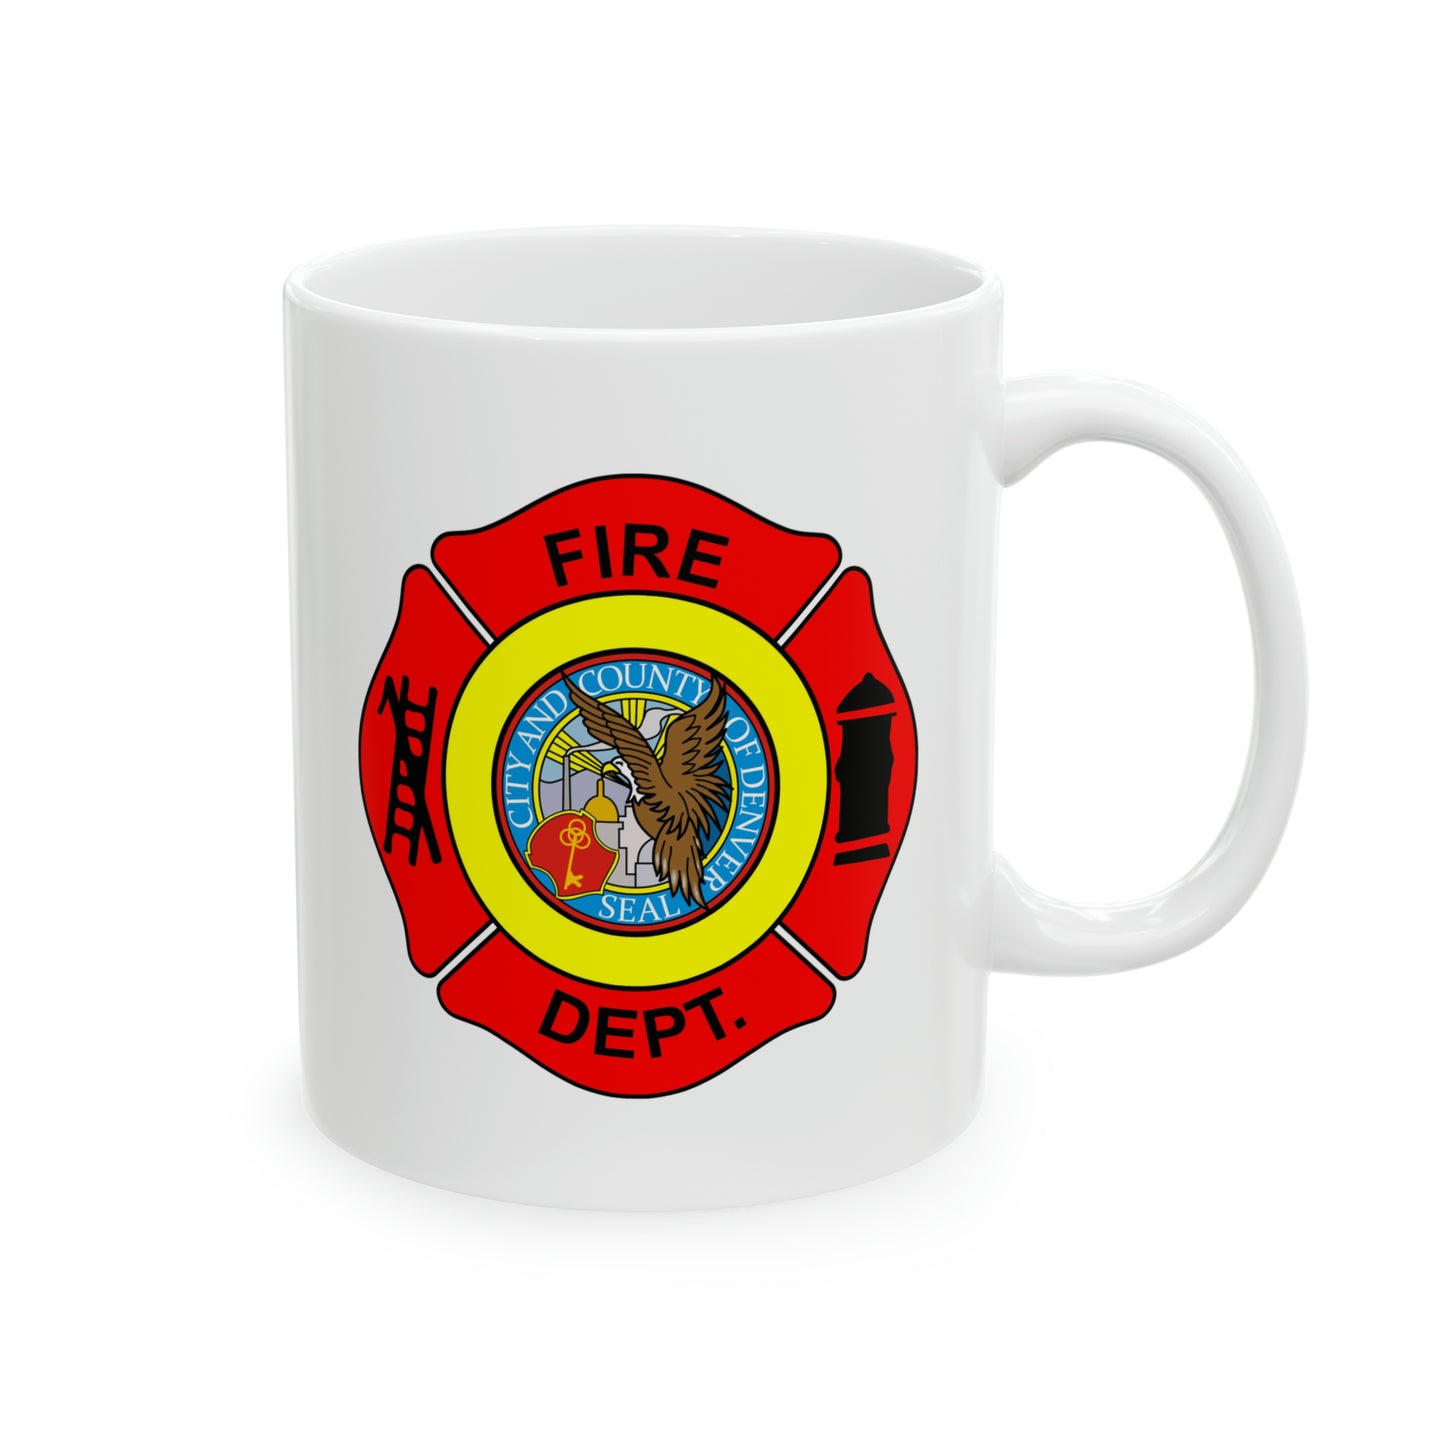 Denver Fire Department Coffee Mug - Double Sided White Ceramic 11oz by TheGlassyLass.com